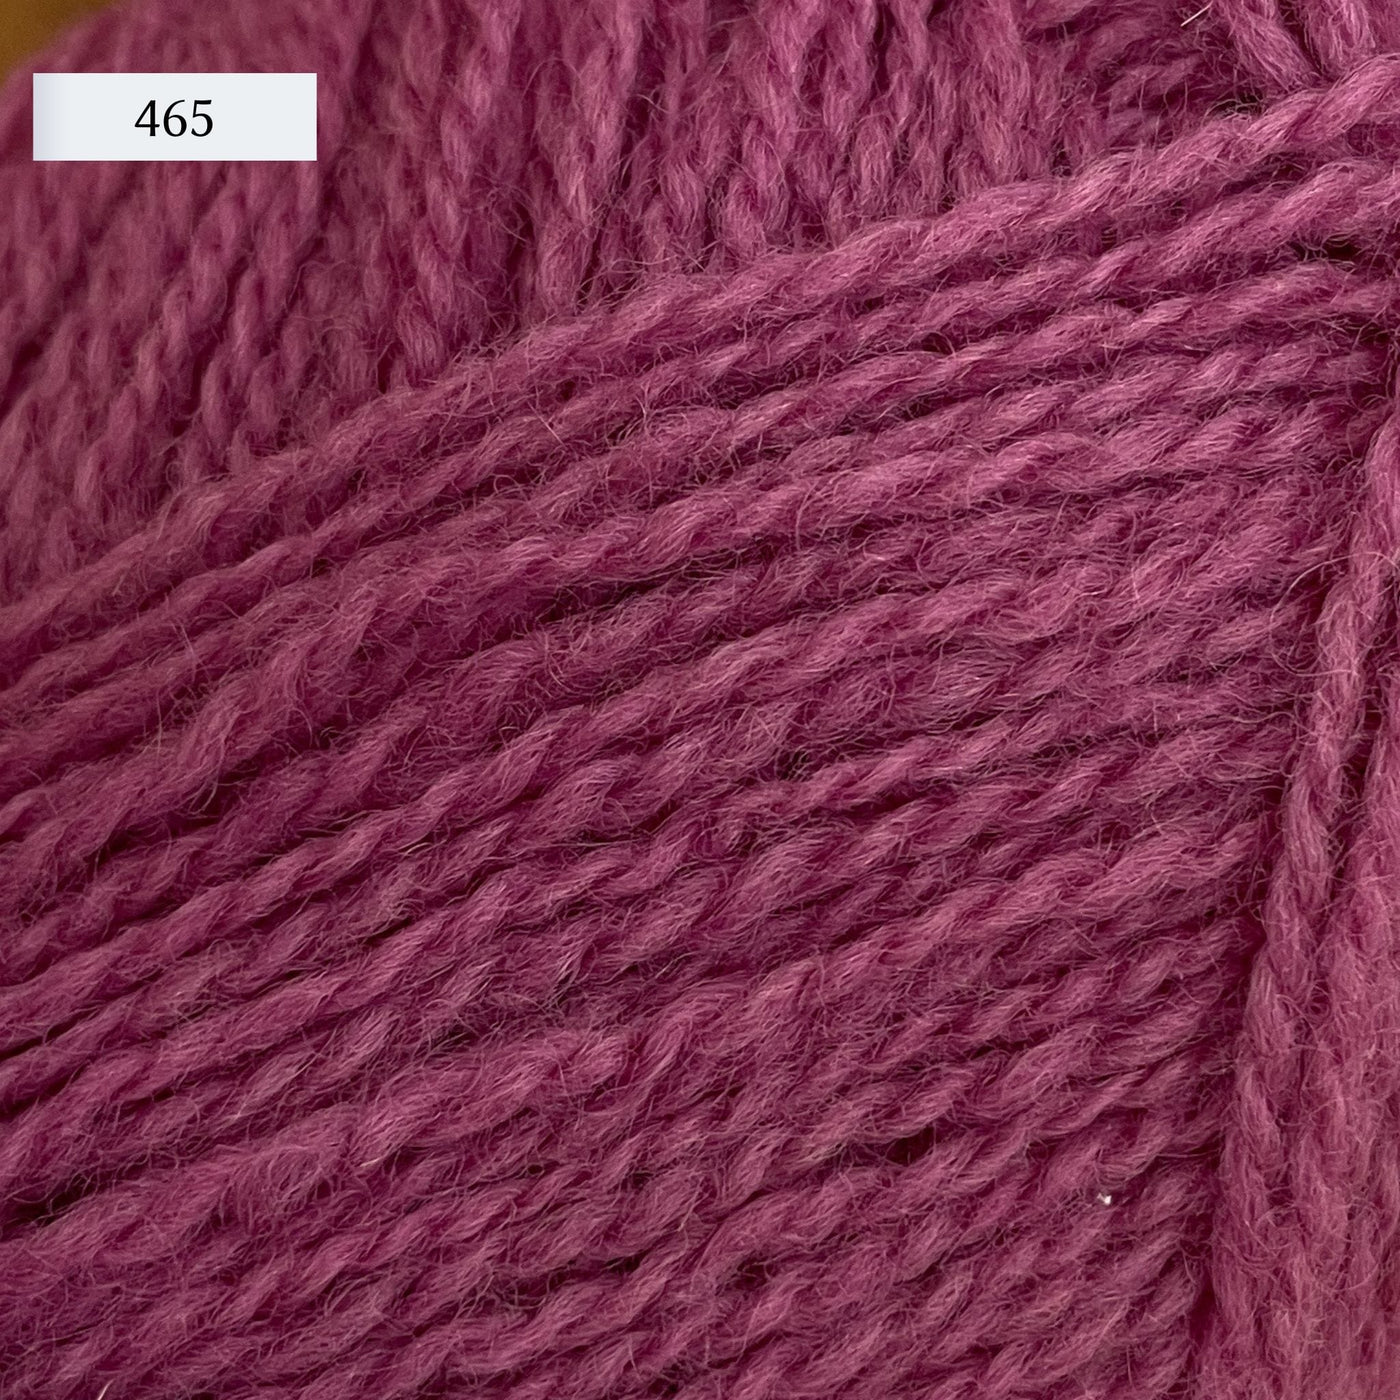 Rauma Finullgarn, a fingering/sport weight yarn, in color 465, a medium pink.